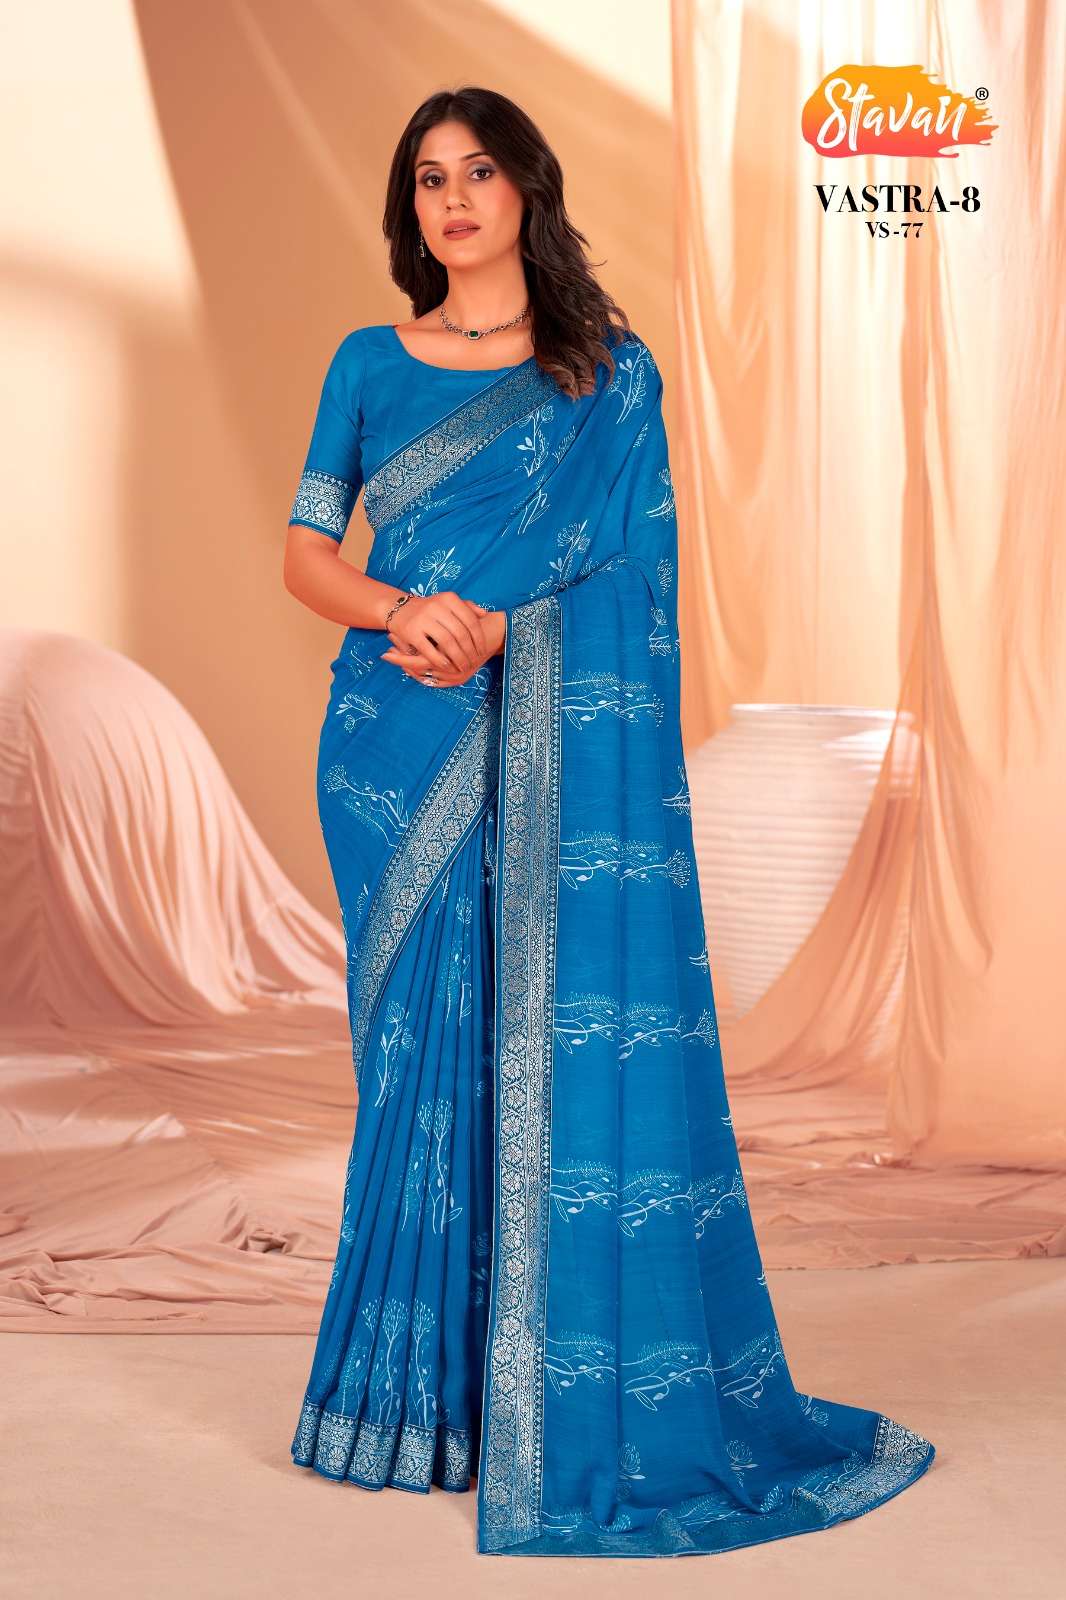 stavan vastra vol 8 heavy weightless fancy sarees online supplier